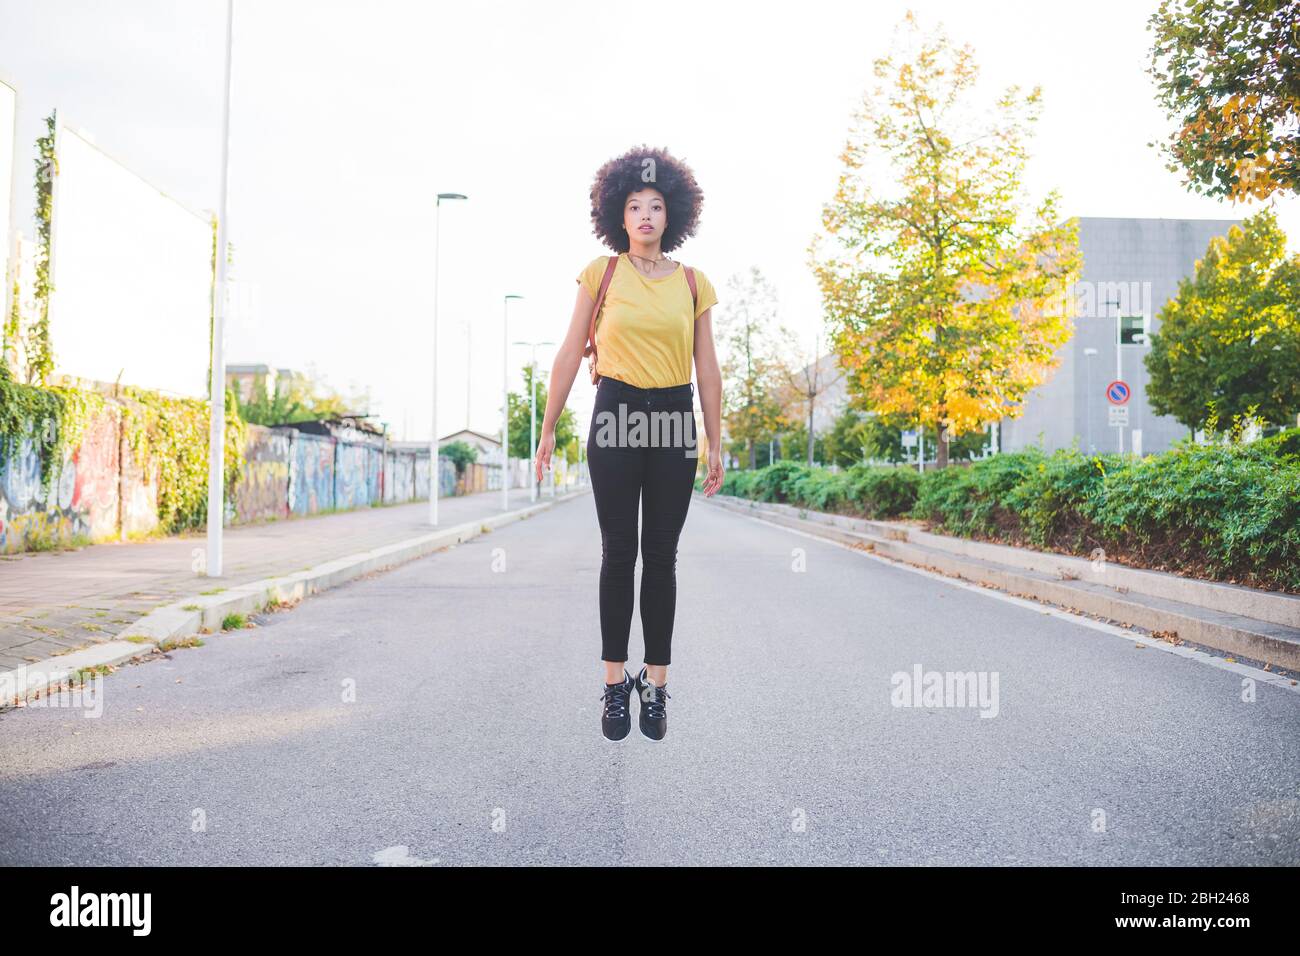 Junge Frau mit Afro-Frisur springt auf einer Straße in der Stadt Stockfoto